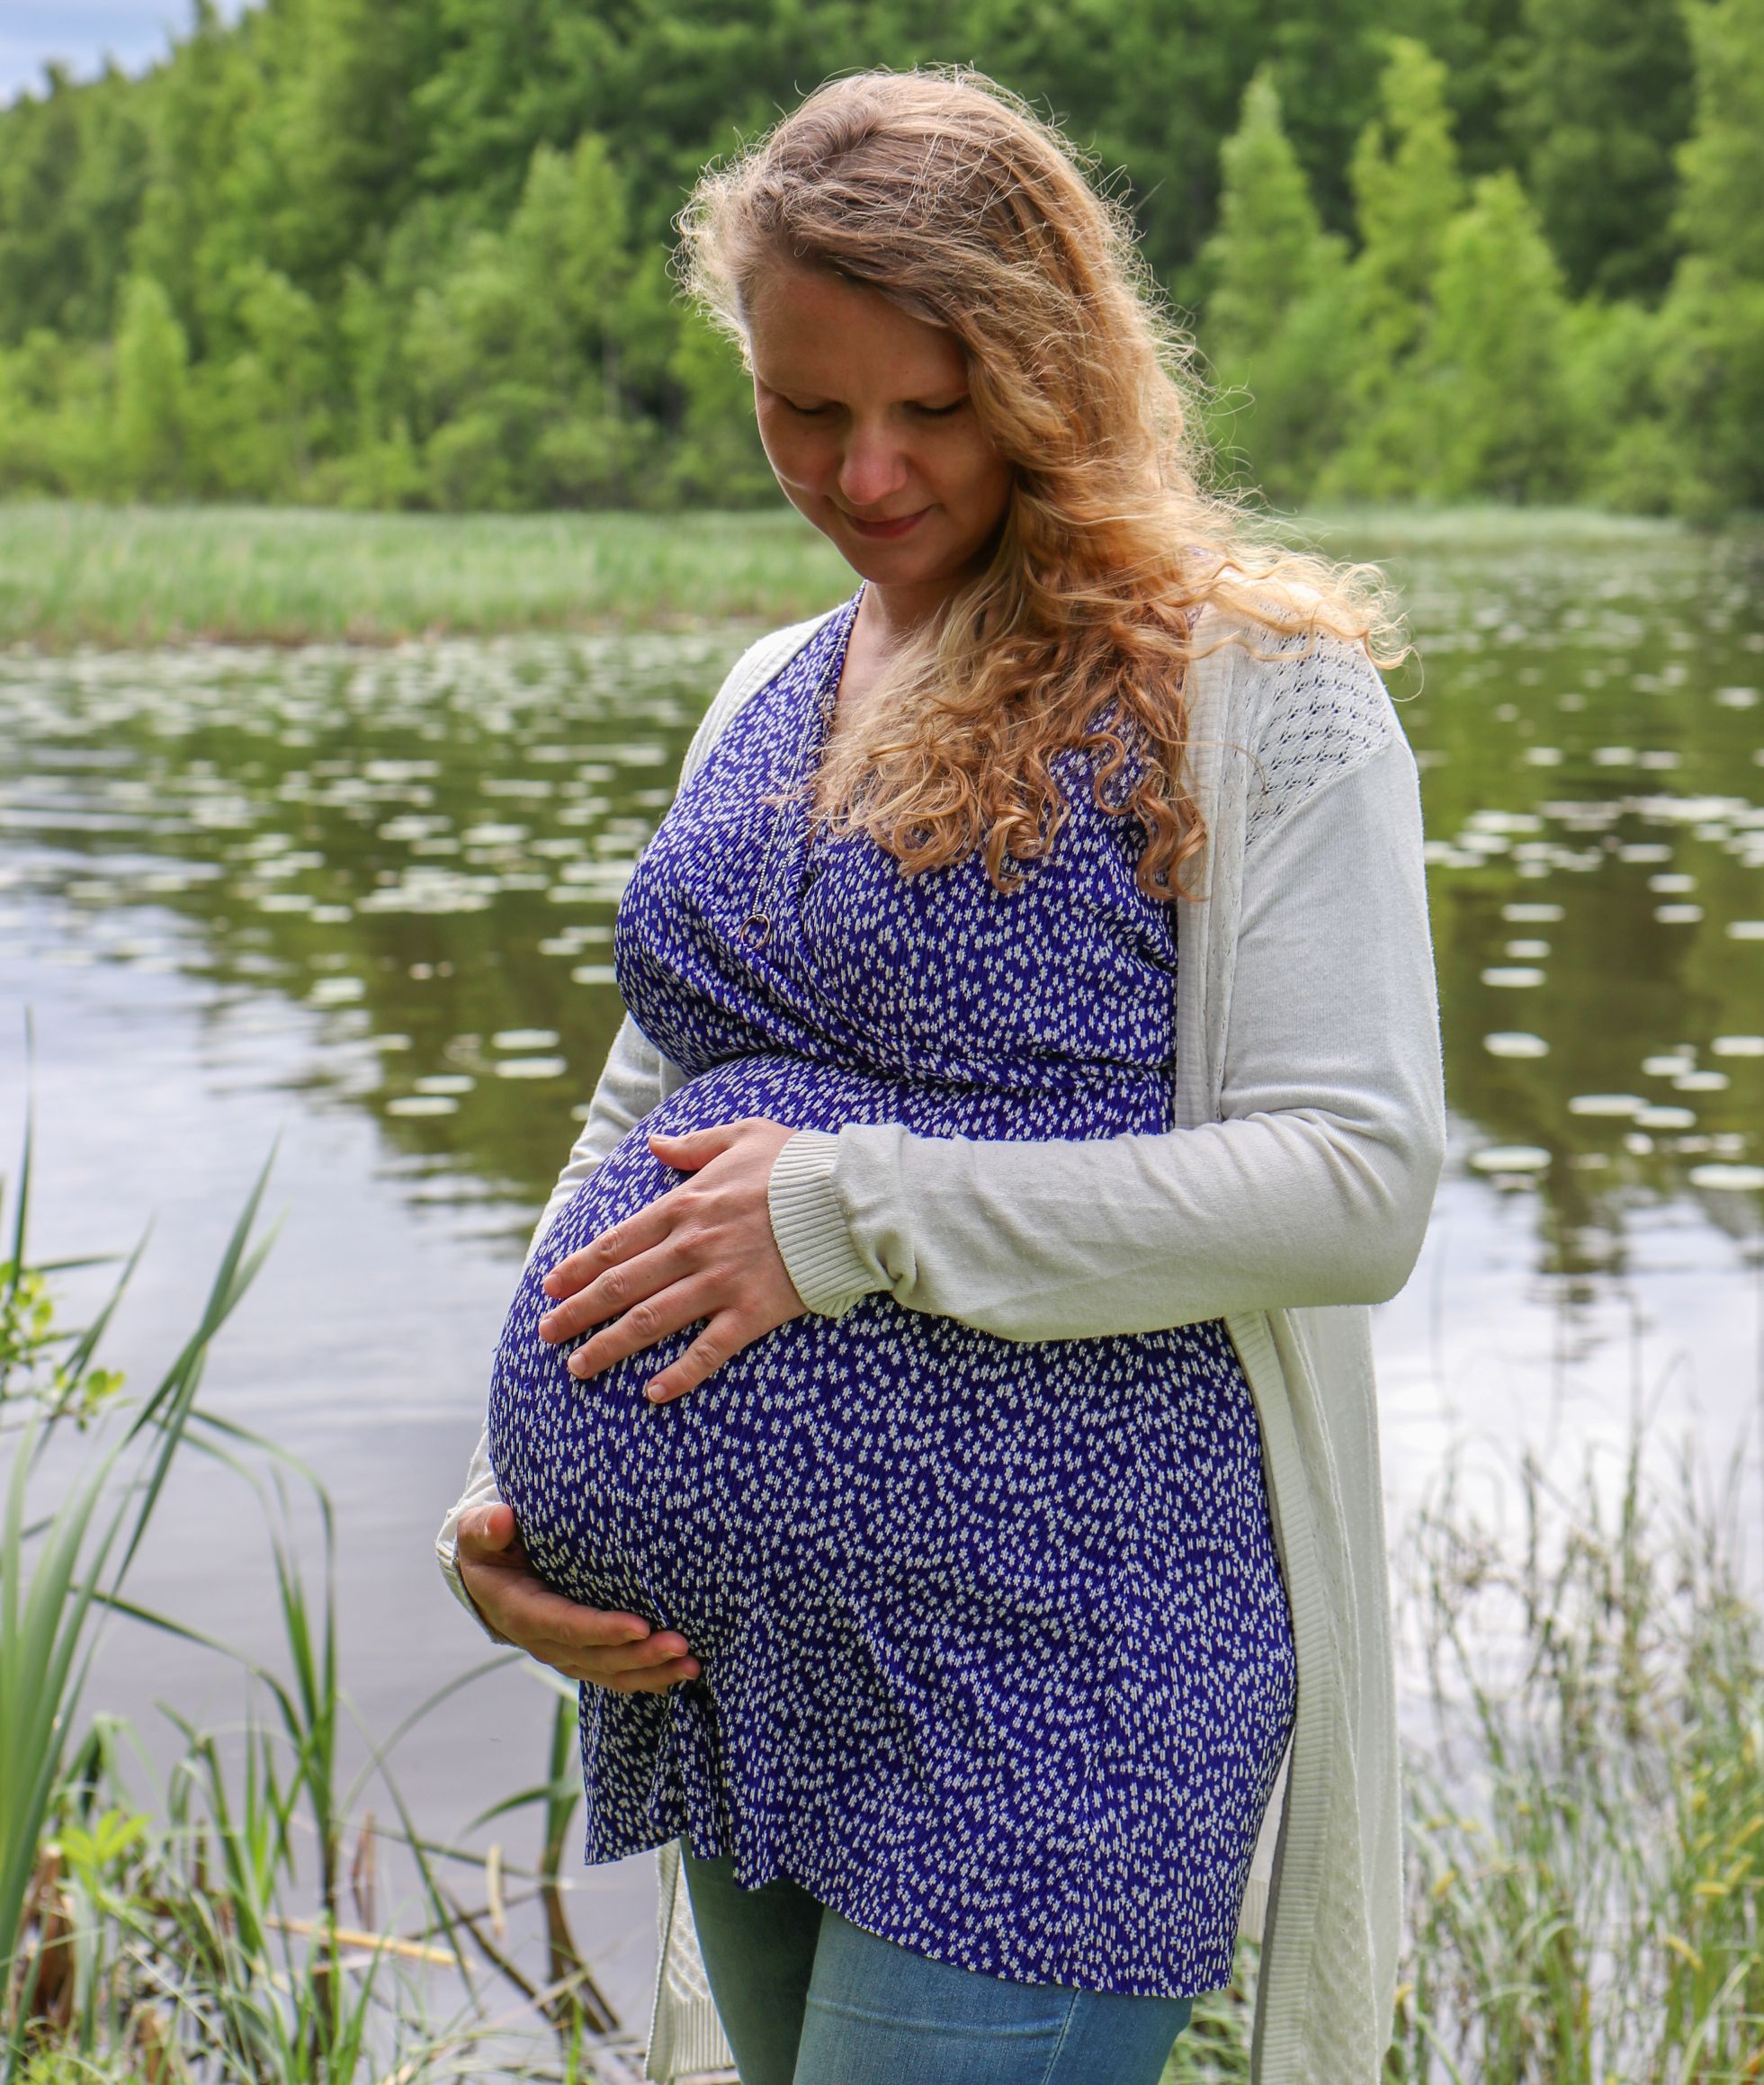 kaksosia odottava äiti kesäisessä järvimaisemassa kädet vatsan ympärillä.